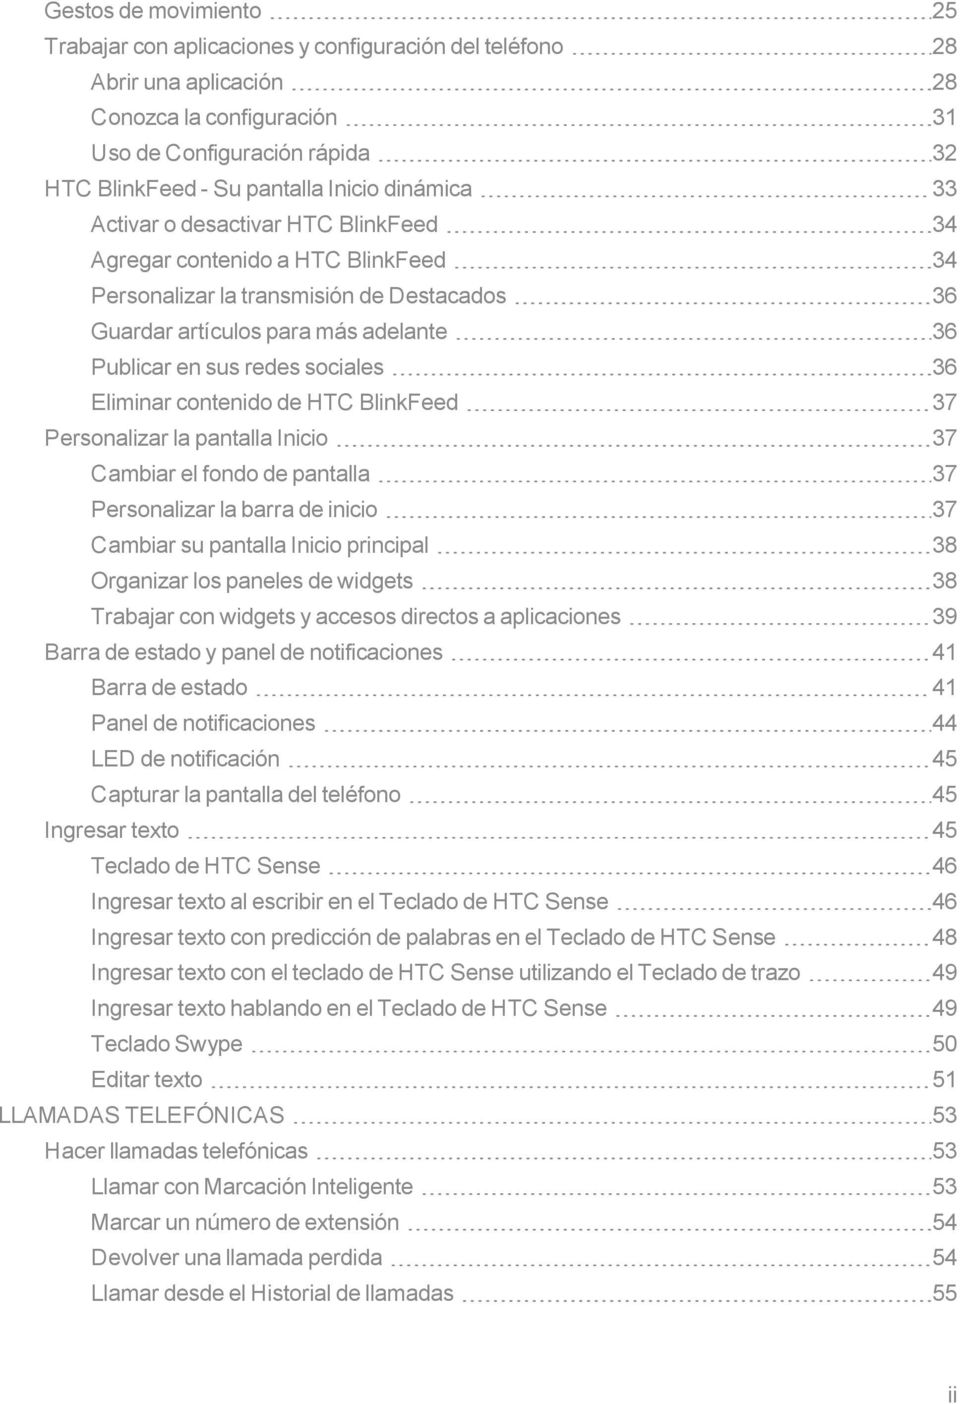 sociales 36 Eliminar contenido de HTC BlinkFeed 37 Personalizar la pantalla Inicio 37 Cambiar el fondo de pantalla 37 Personalizar la barra de inicio 37 Cambiar su pantalla Inicio principal 38